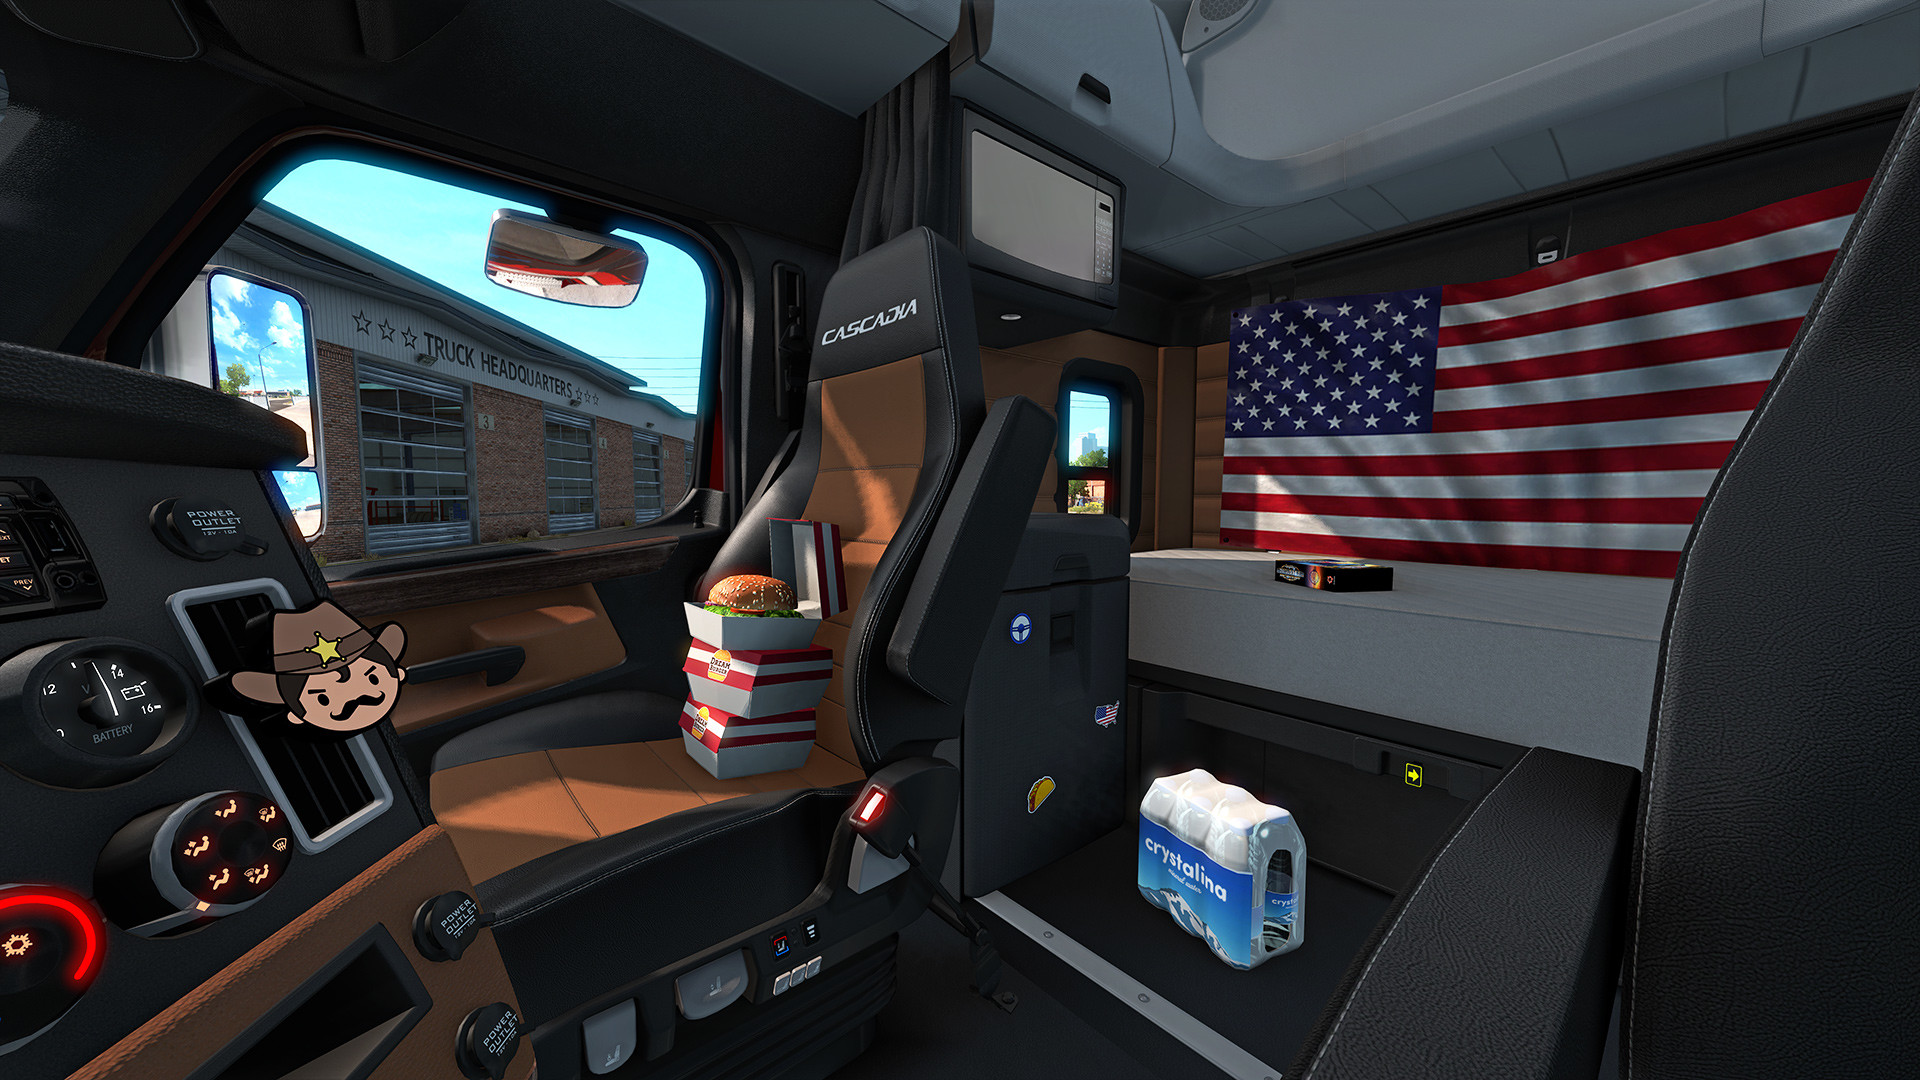 (124.46$) American Truck Simulator - Cabin Accessories DLC Steam CD Key